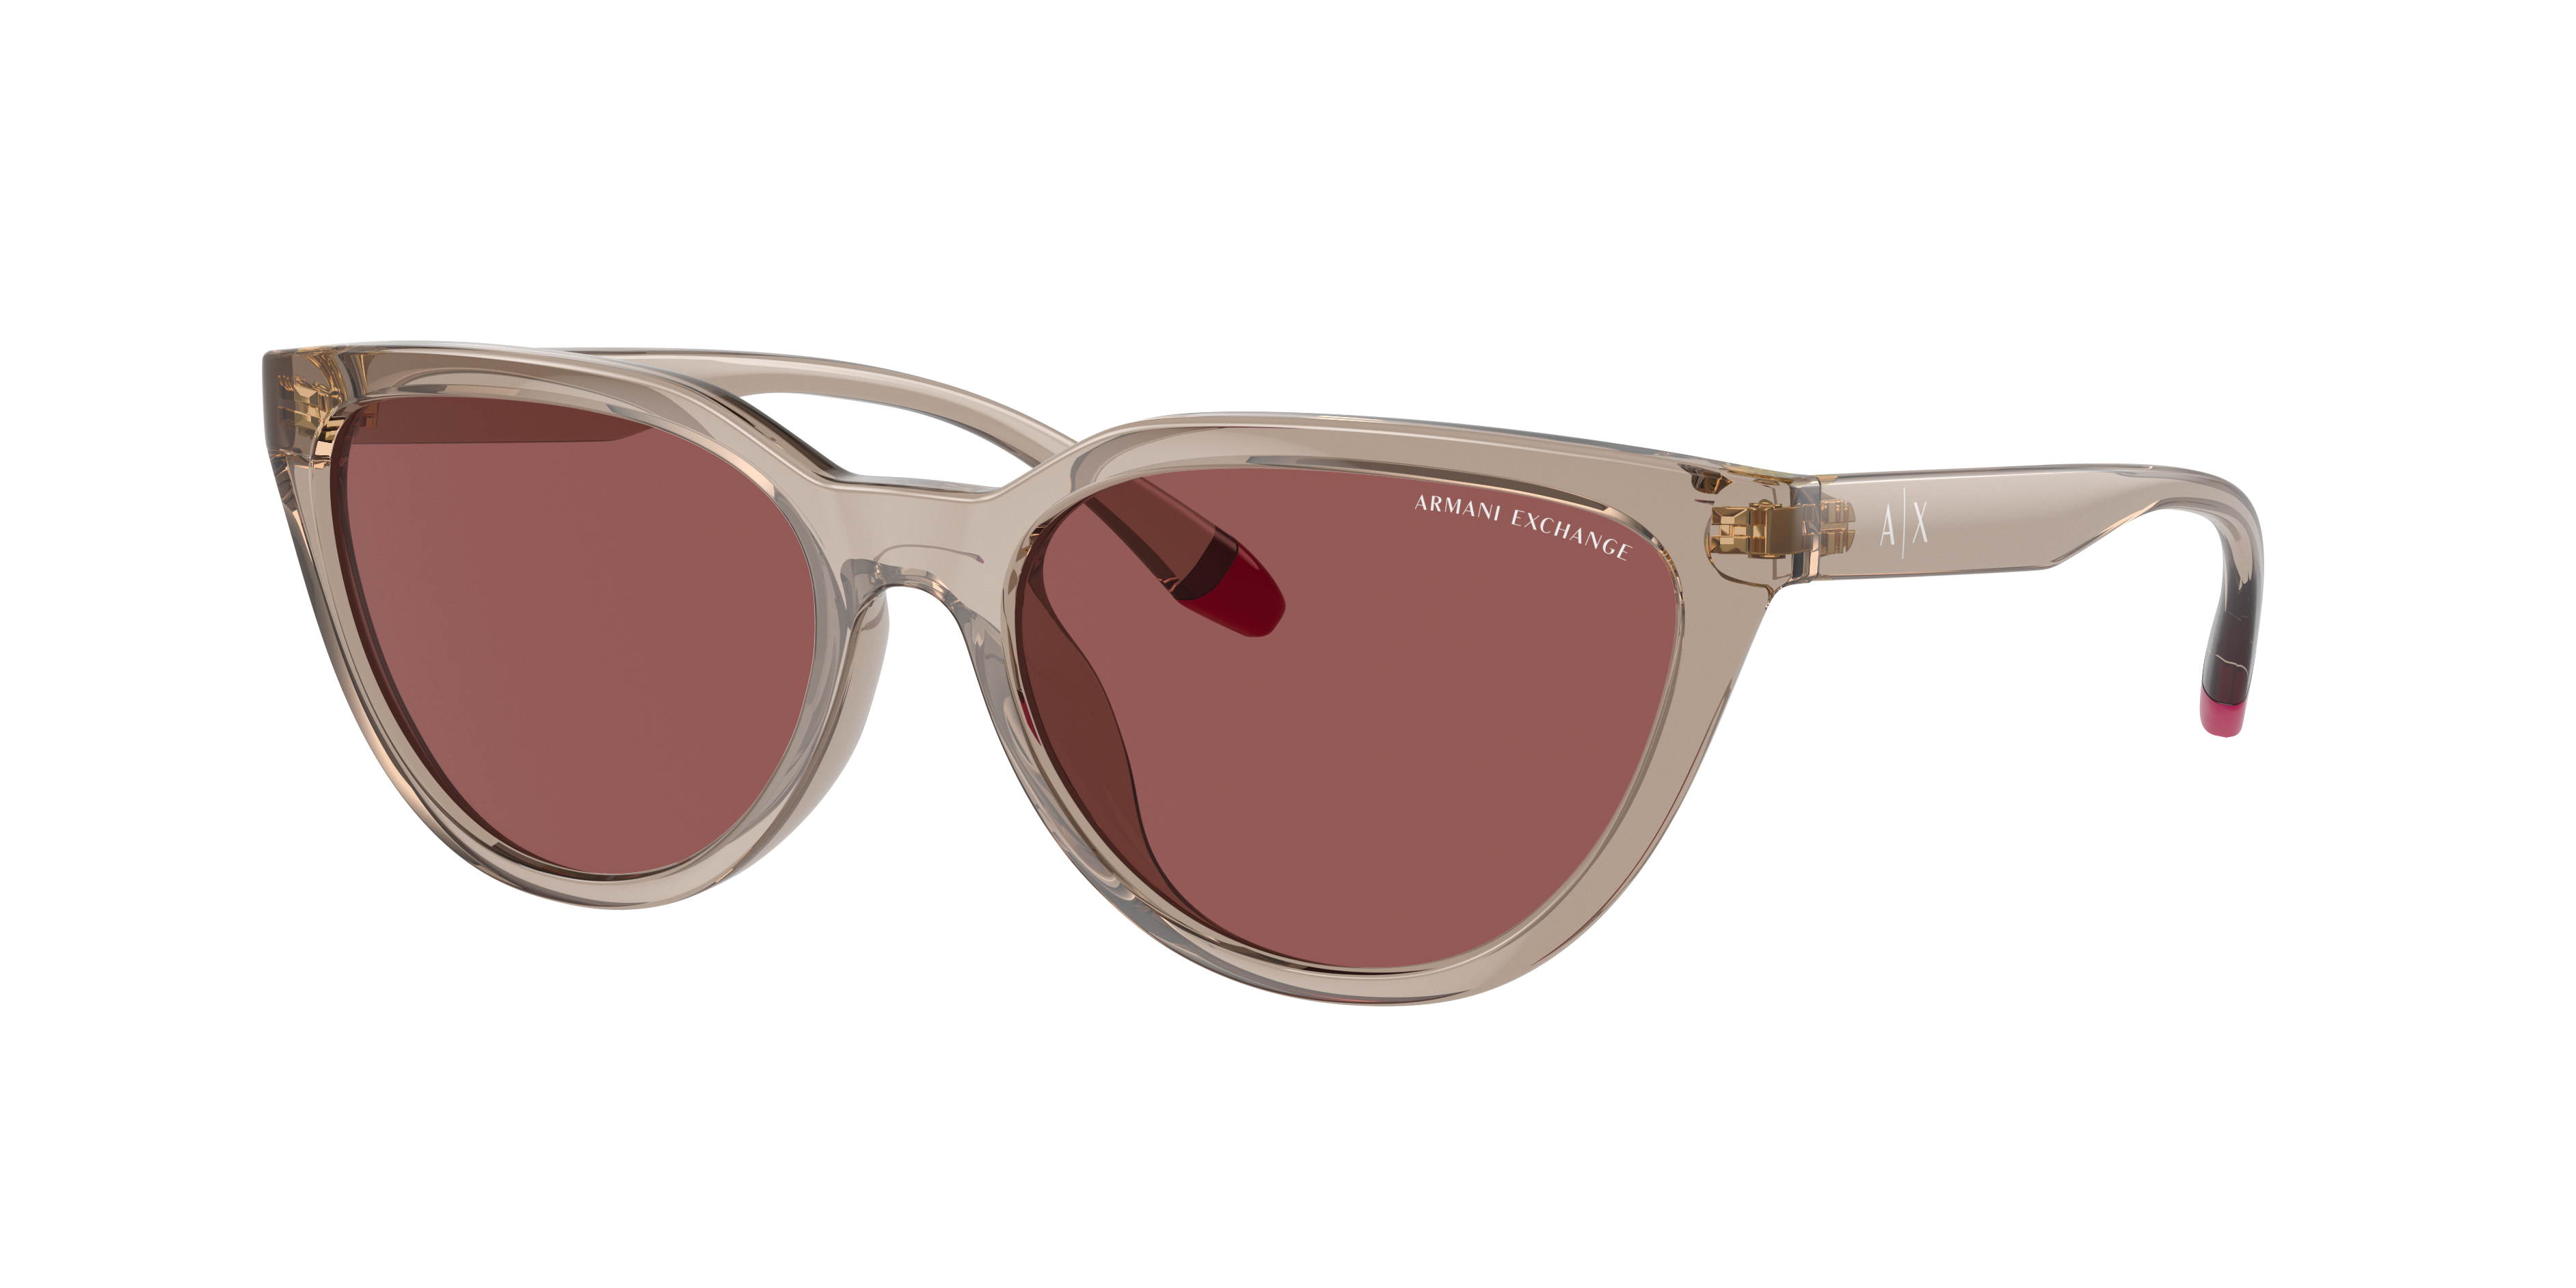 Consulte nosso catálogo de Óculos de Sol Armani Exchange Eyewear com diversos modelos e preços para sua escolha.